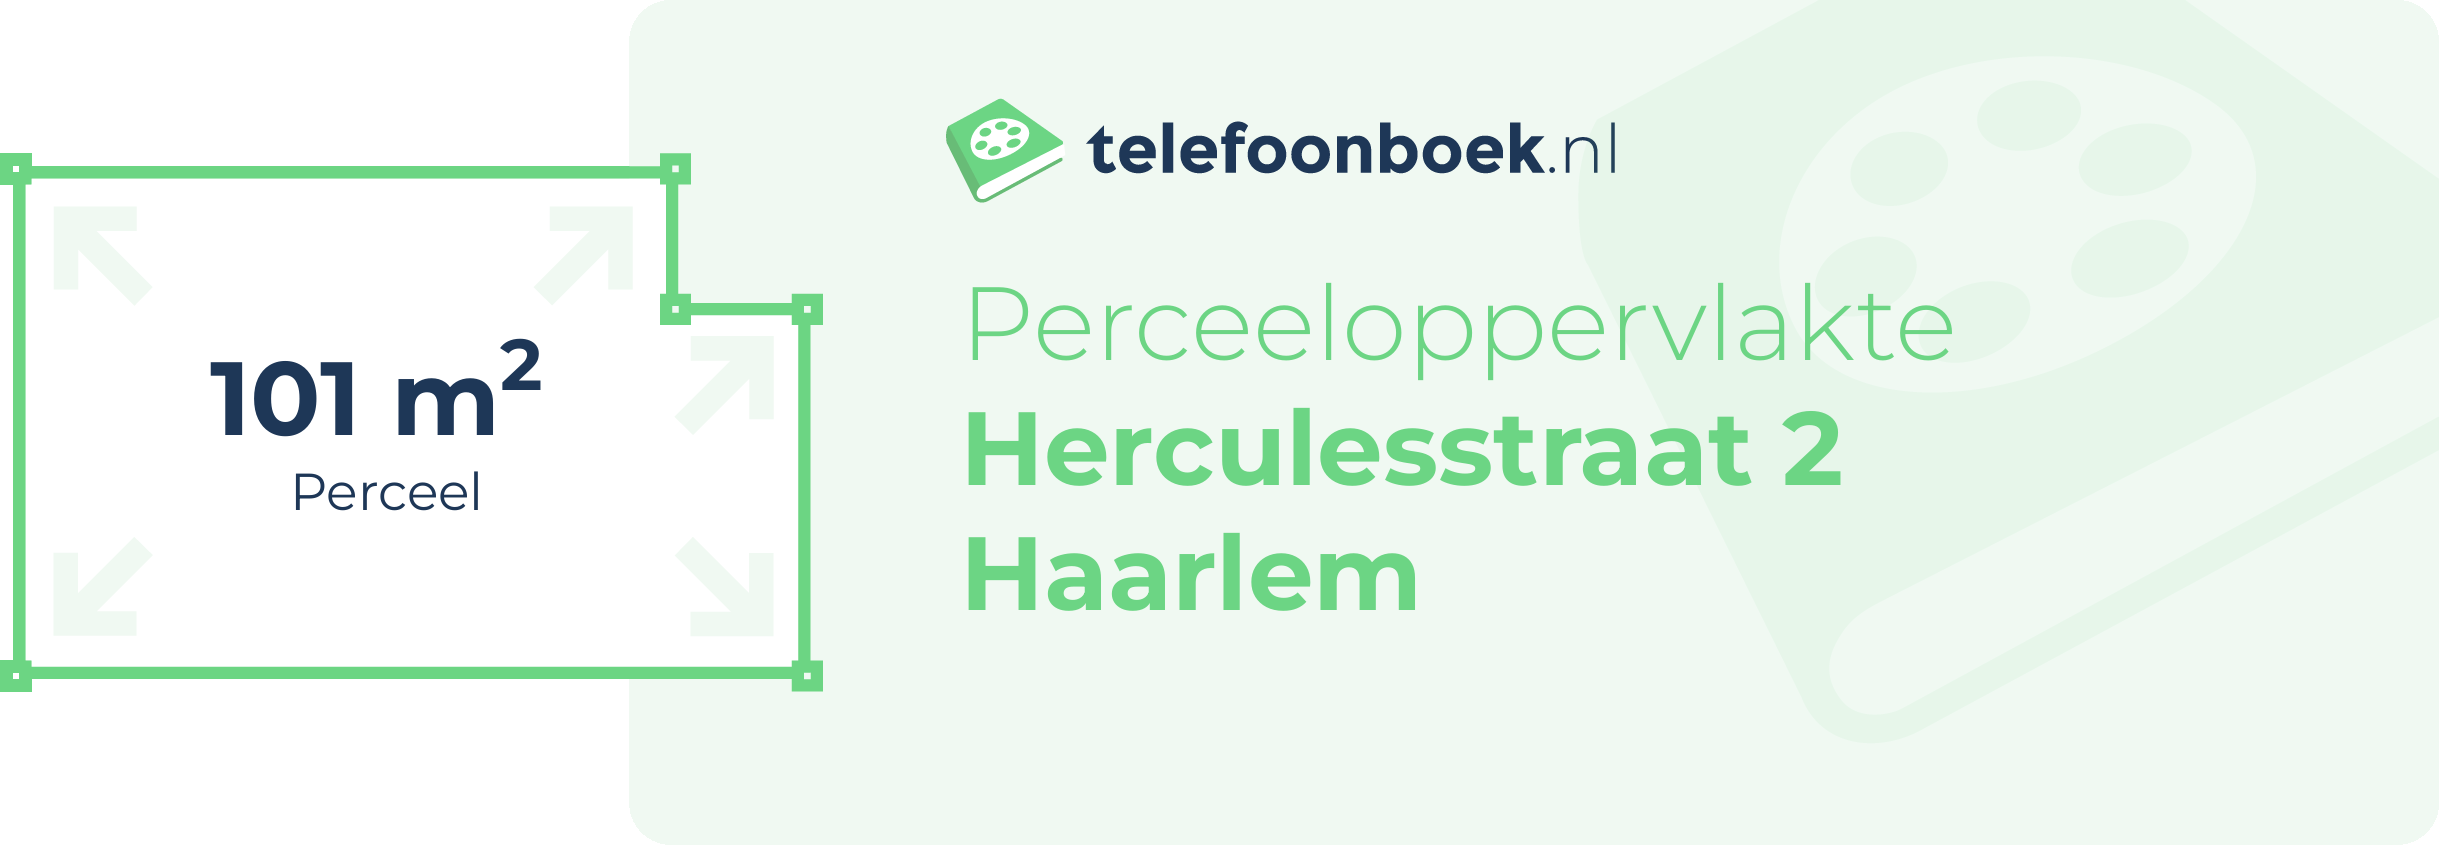 Perceeloppervlakte Herculesstraat 2 Haarlem